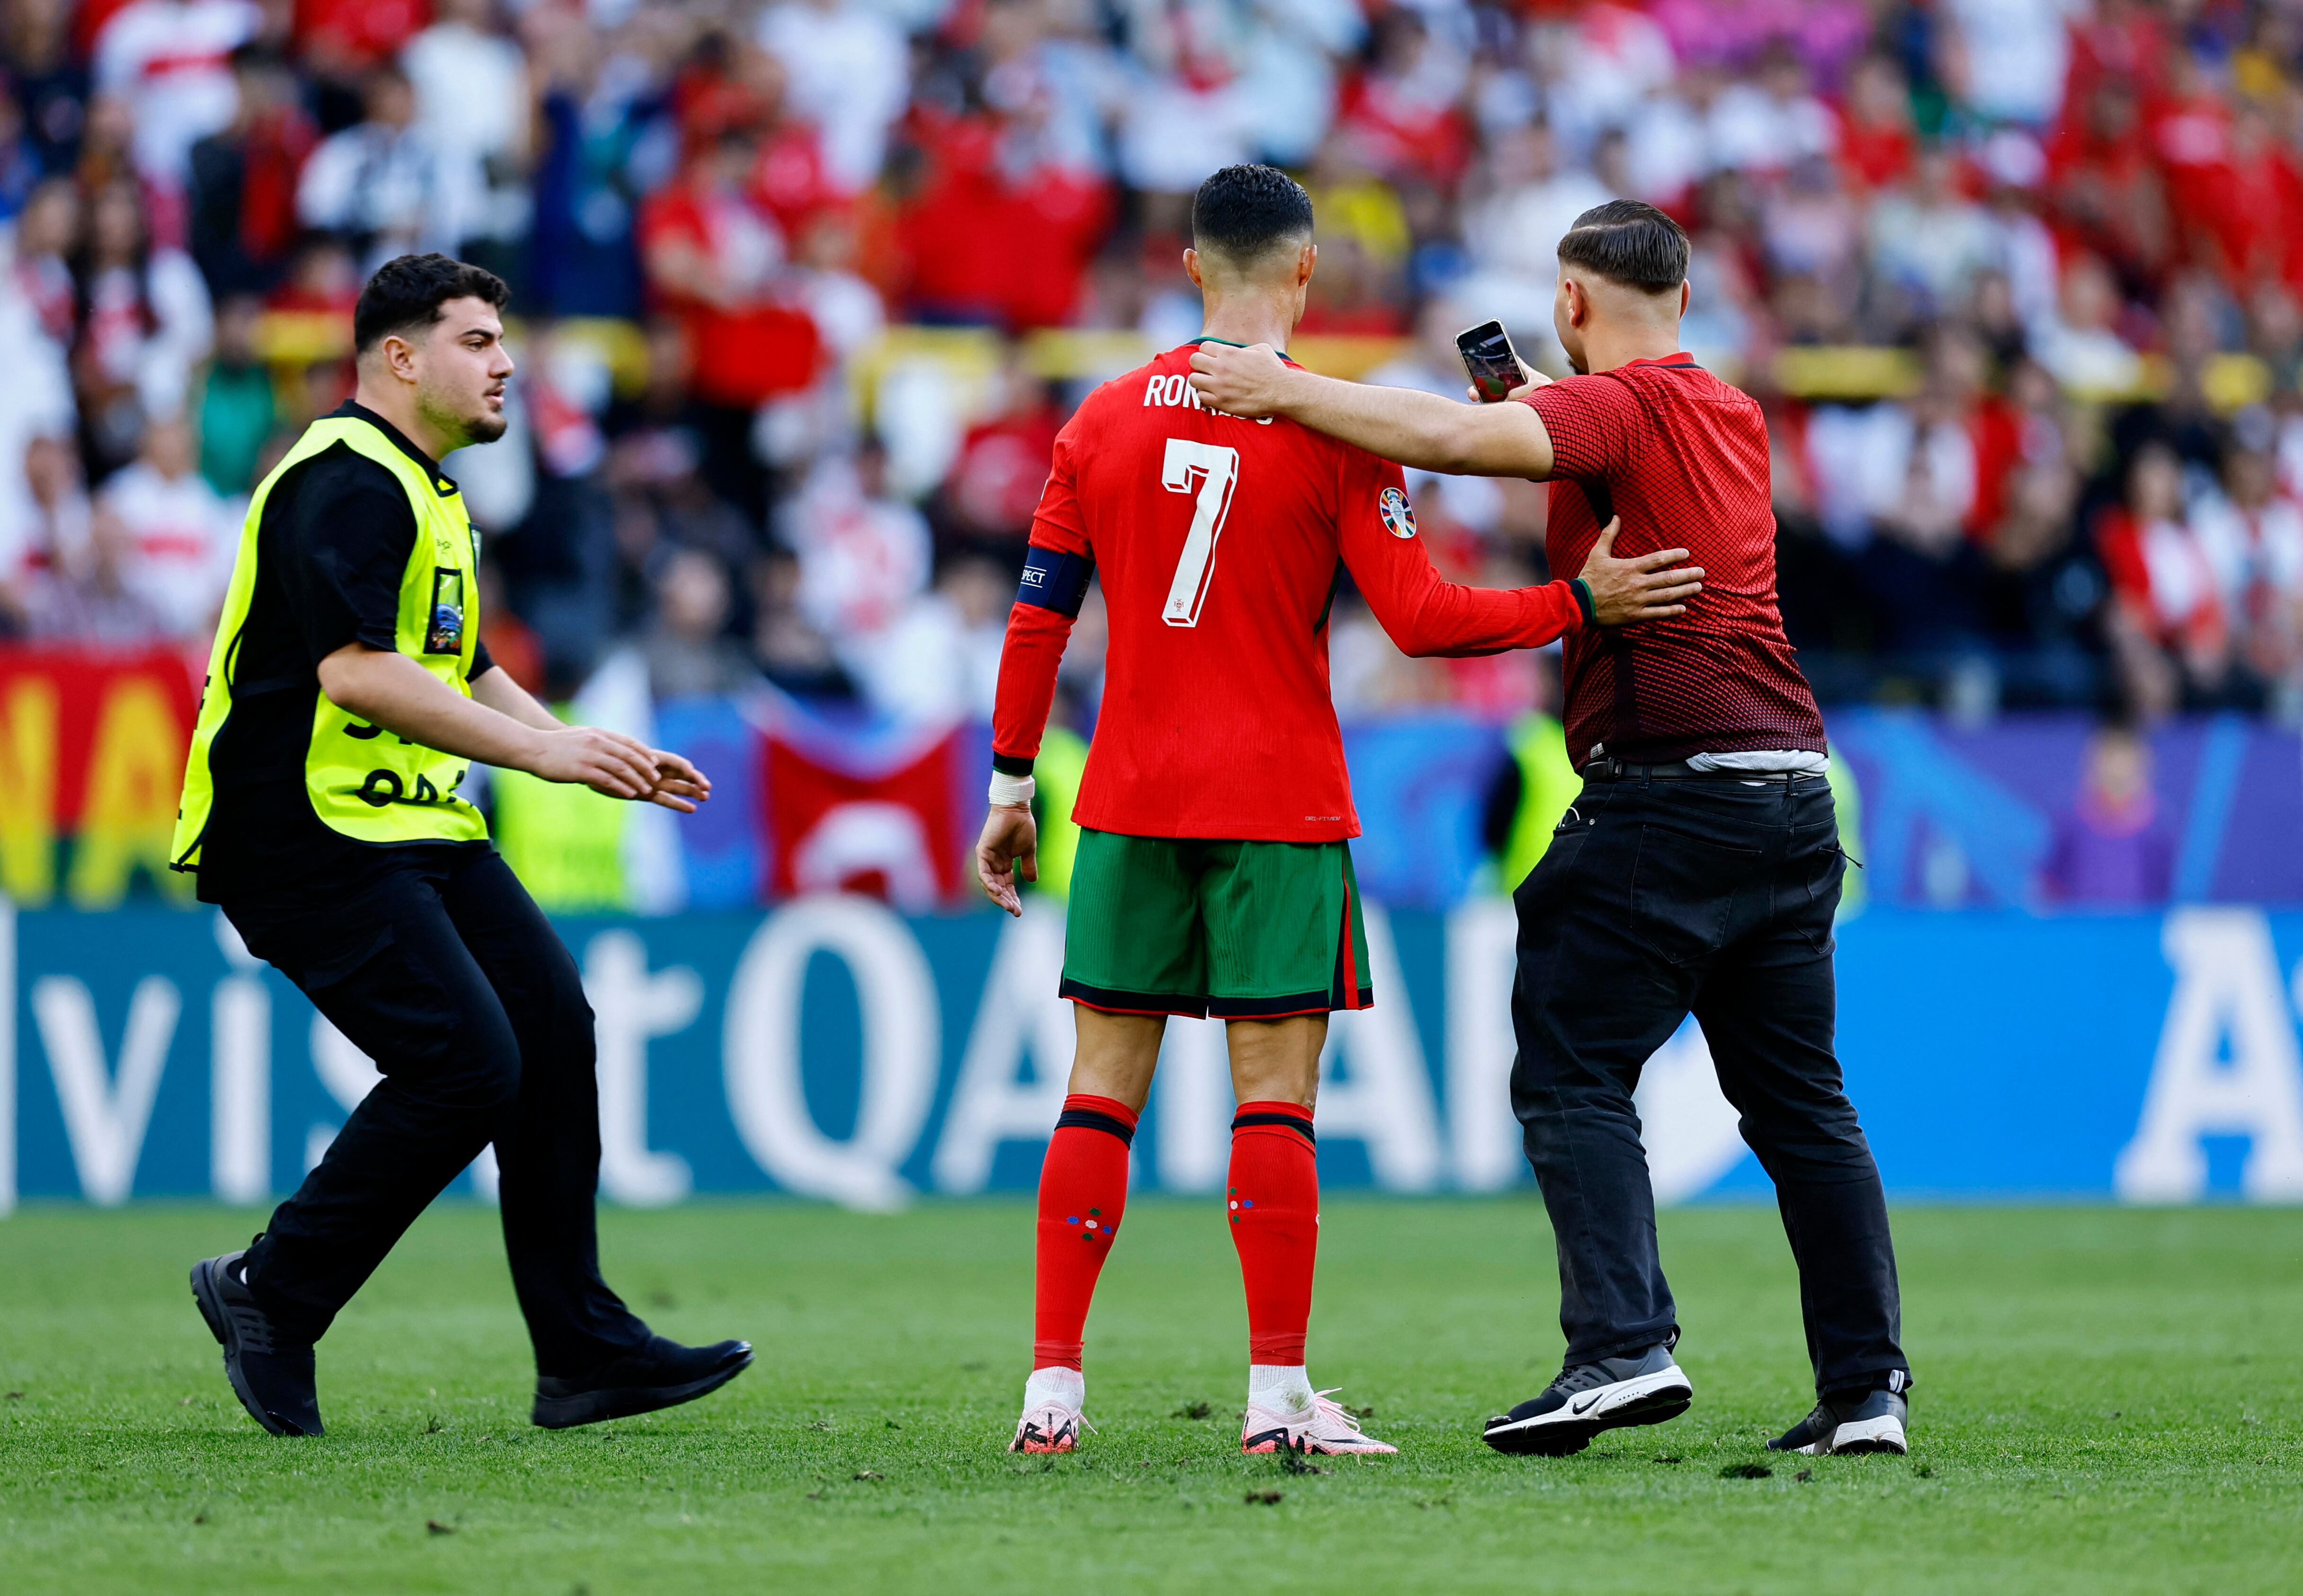 "No es bueno que los jugadores estén tan expuestos en el campo", planteó el DT de Portugal (Foto: Reuters/Leon Kuegeler)